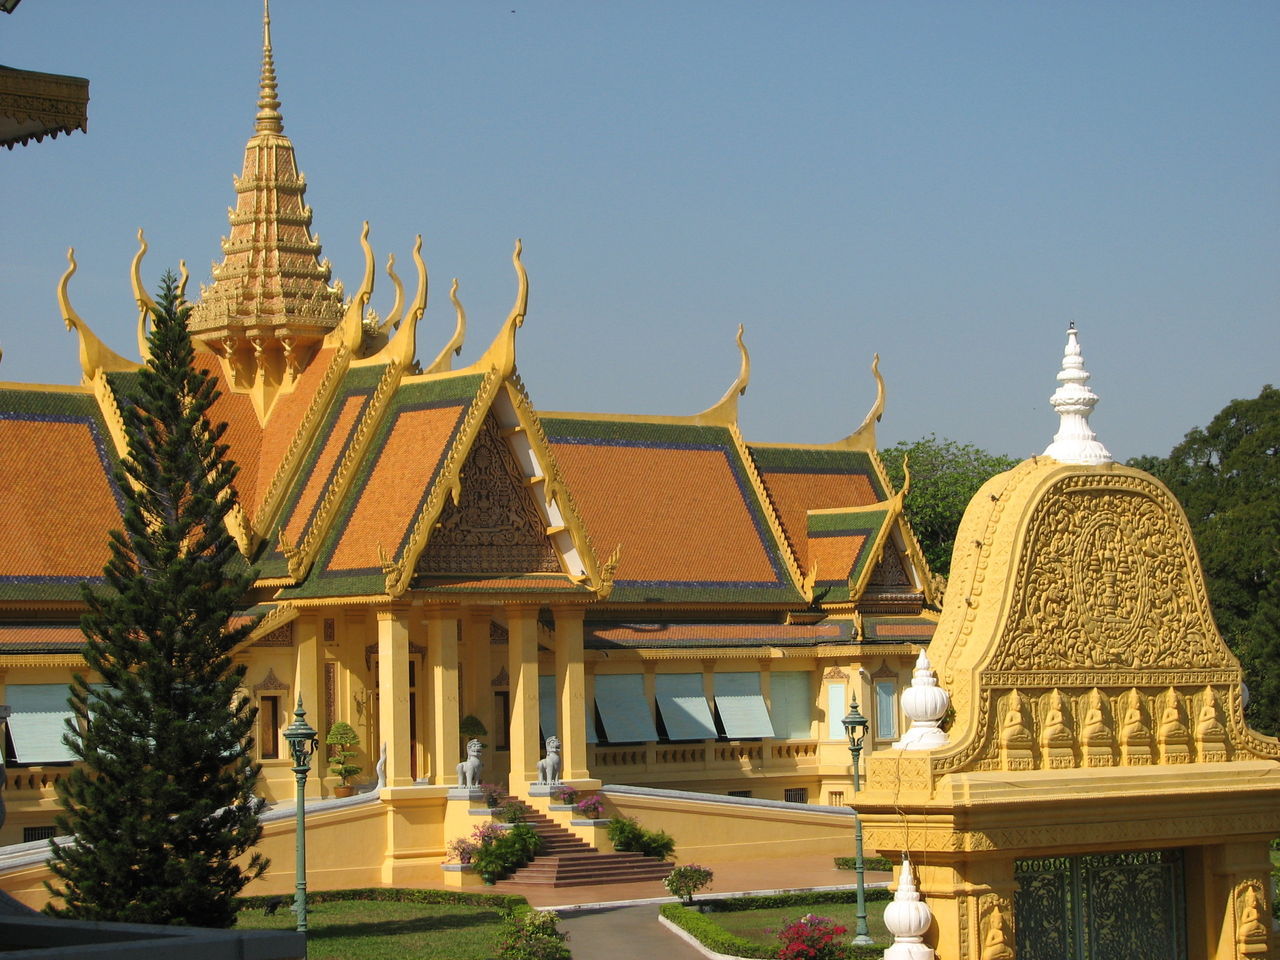 泰国大皇宫 - 曼谷景点 - 华侨城旅游网